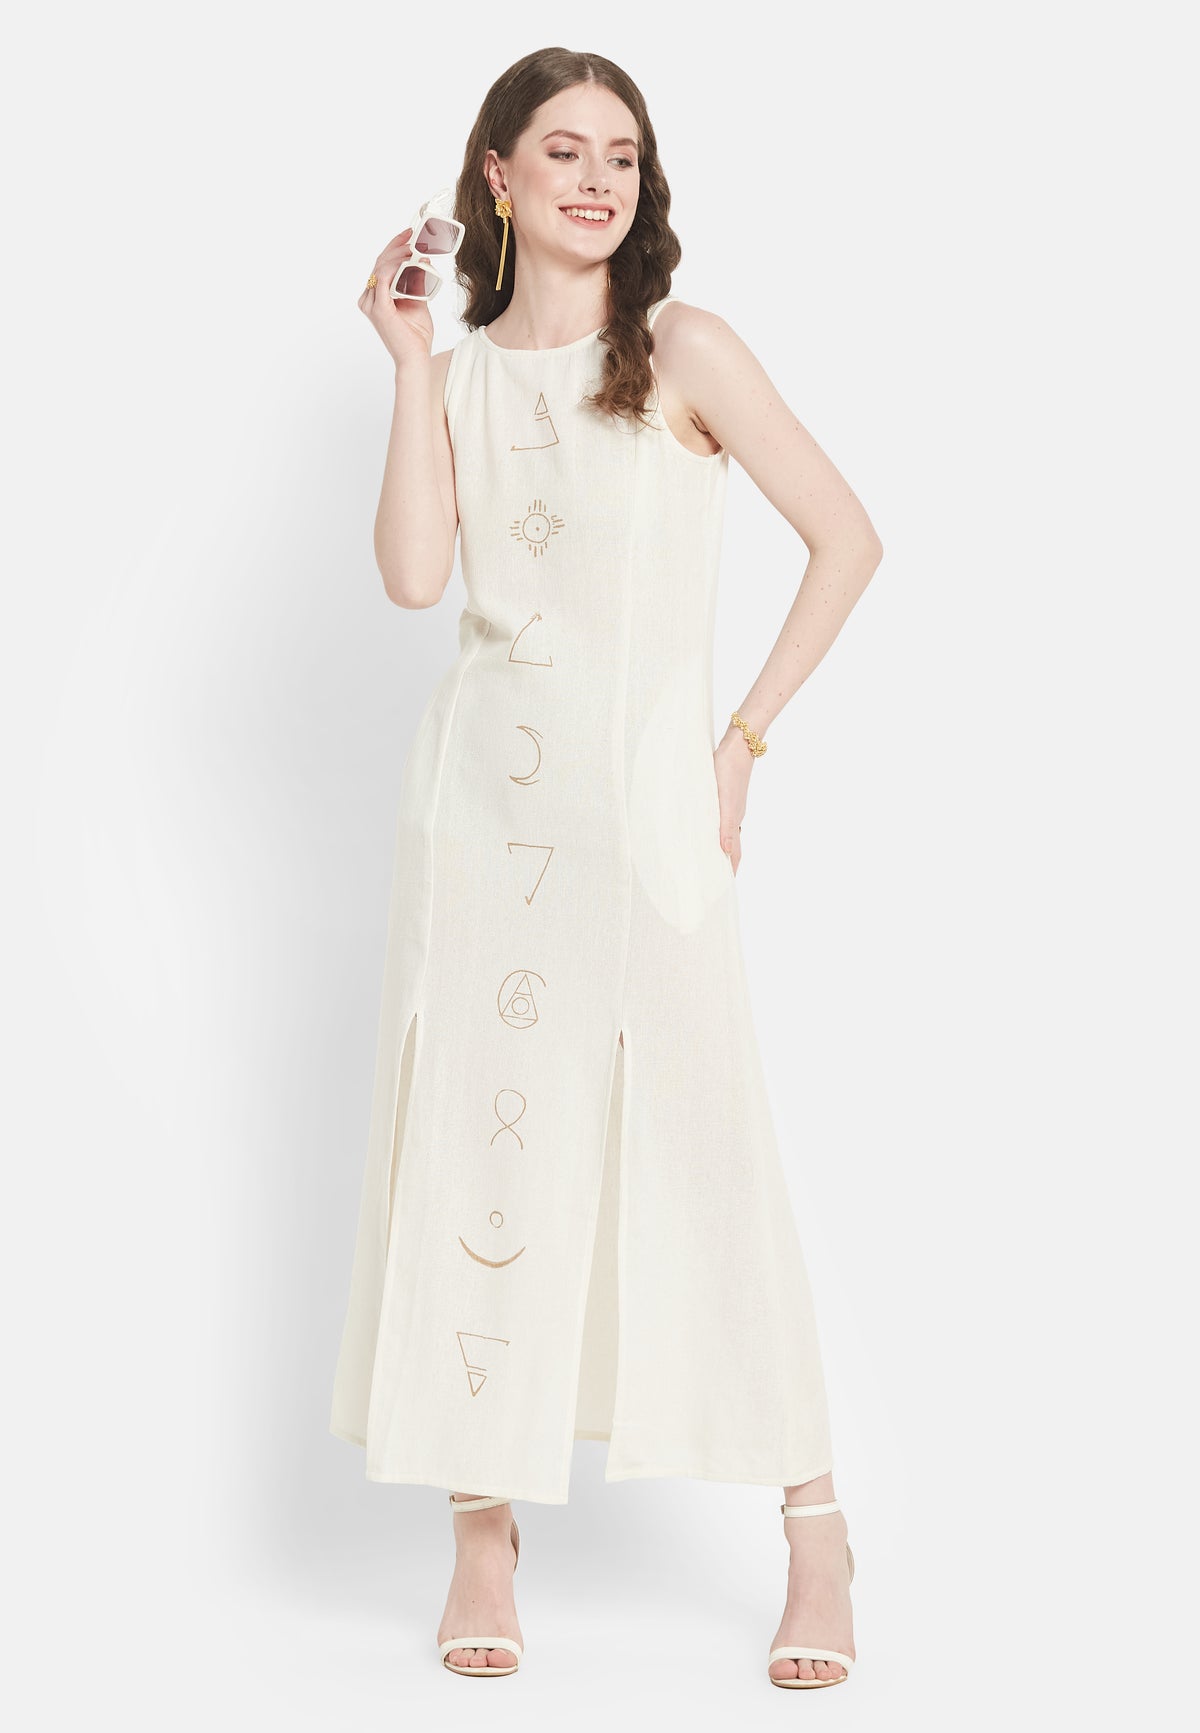 Elara White Dress